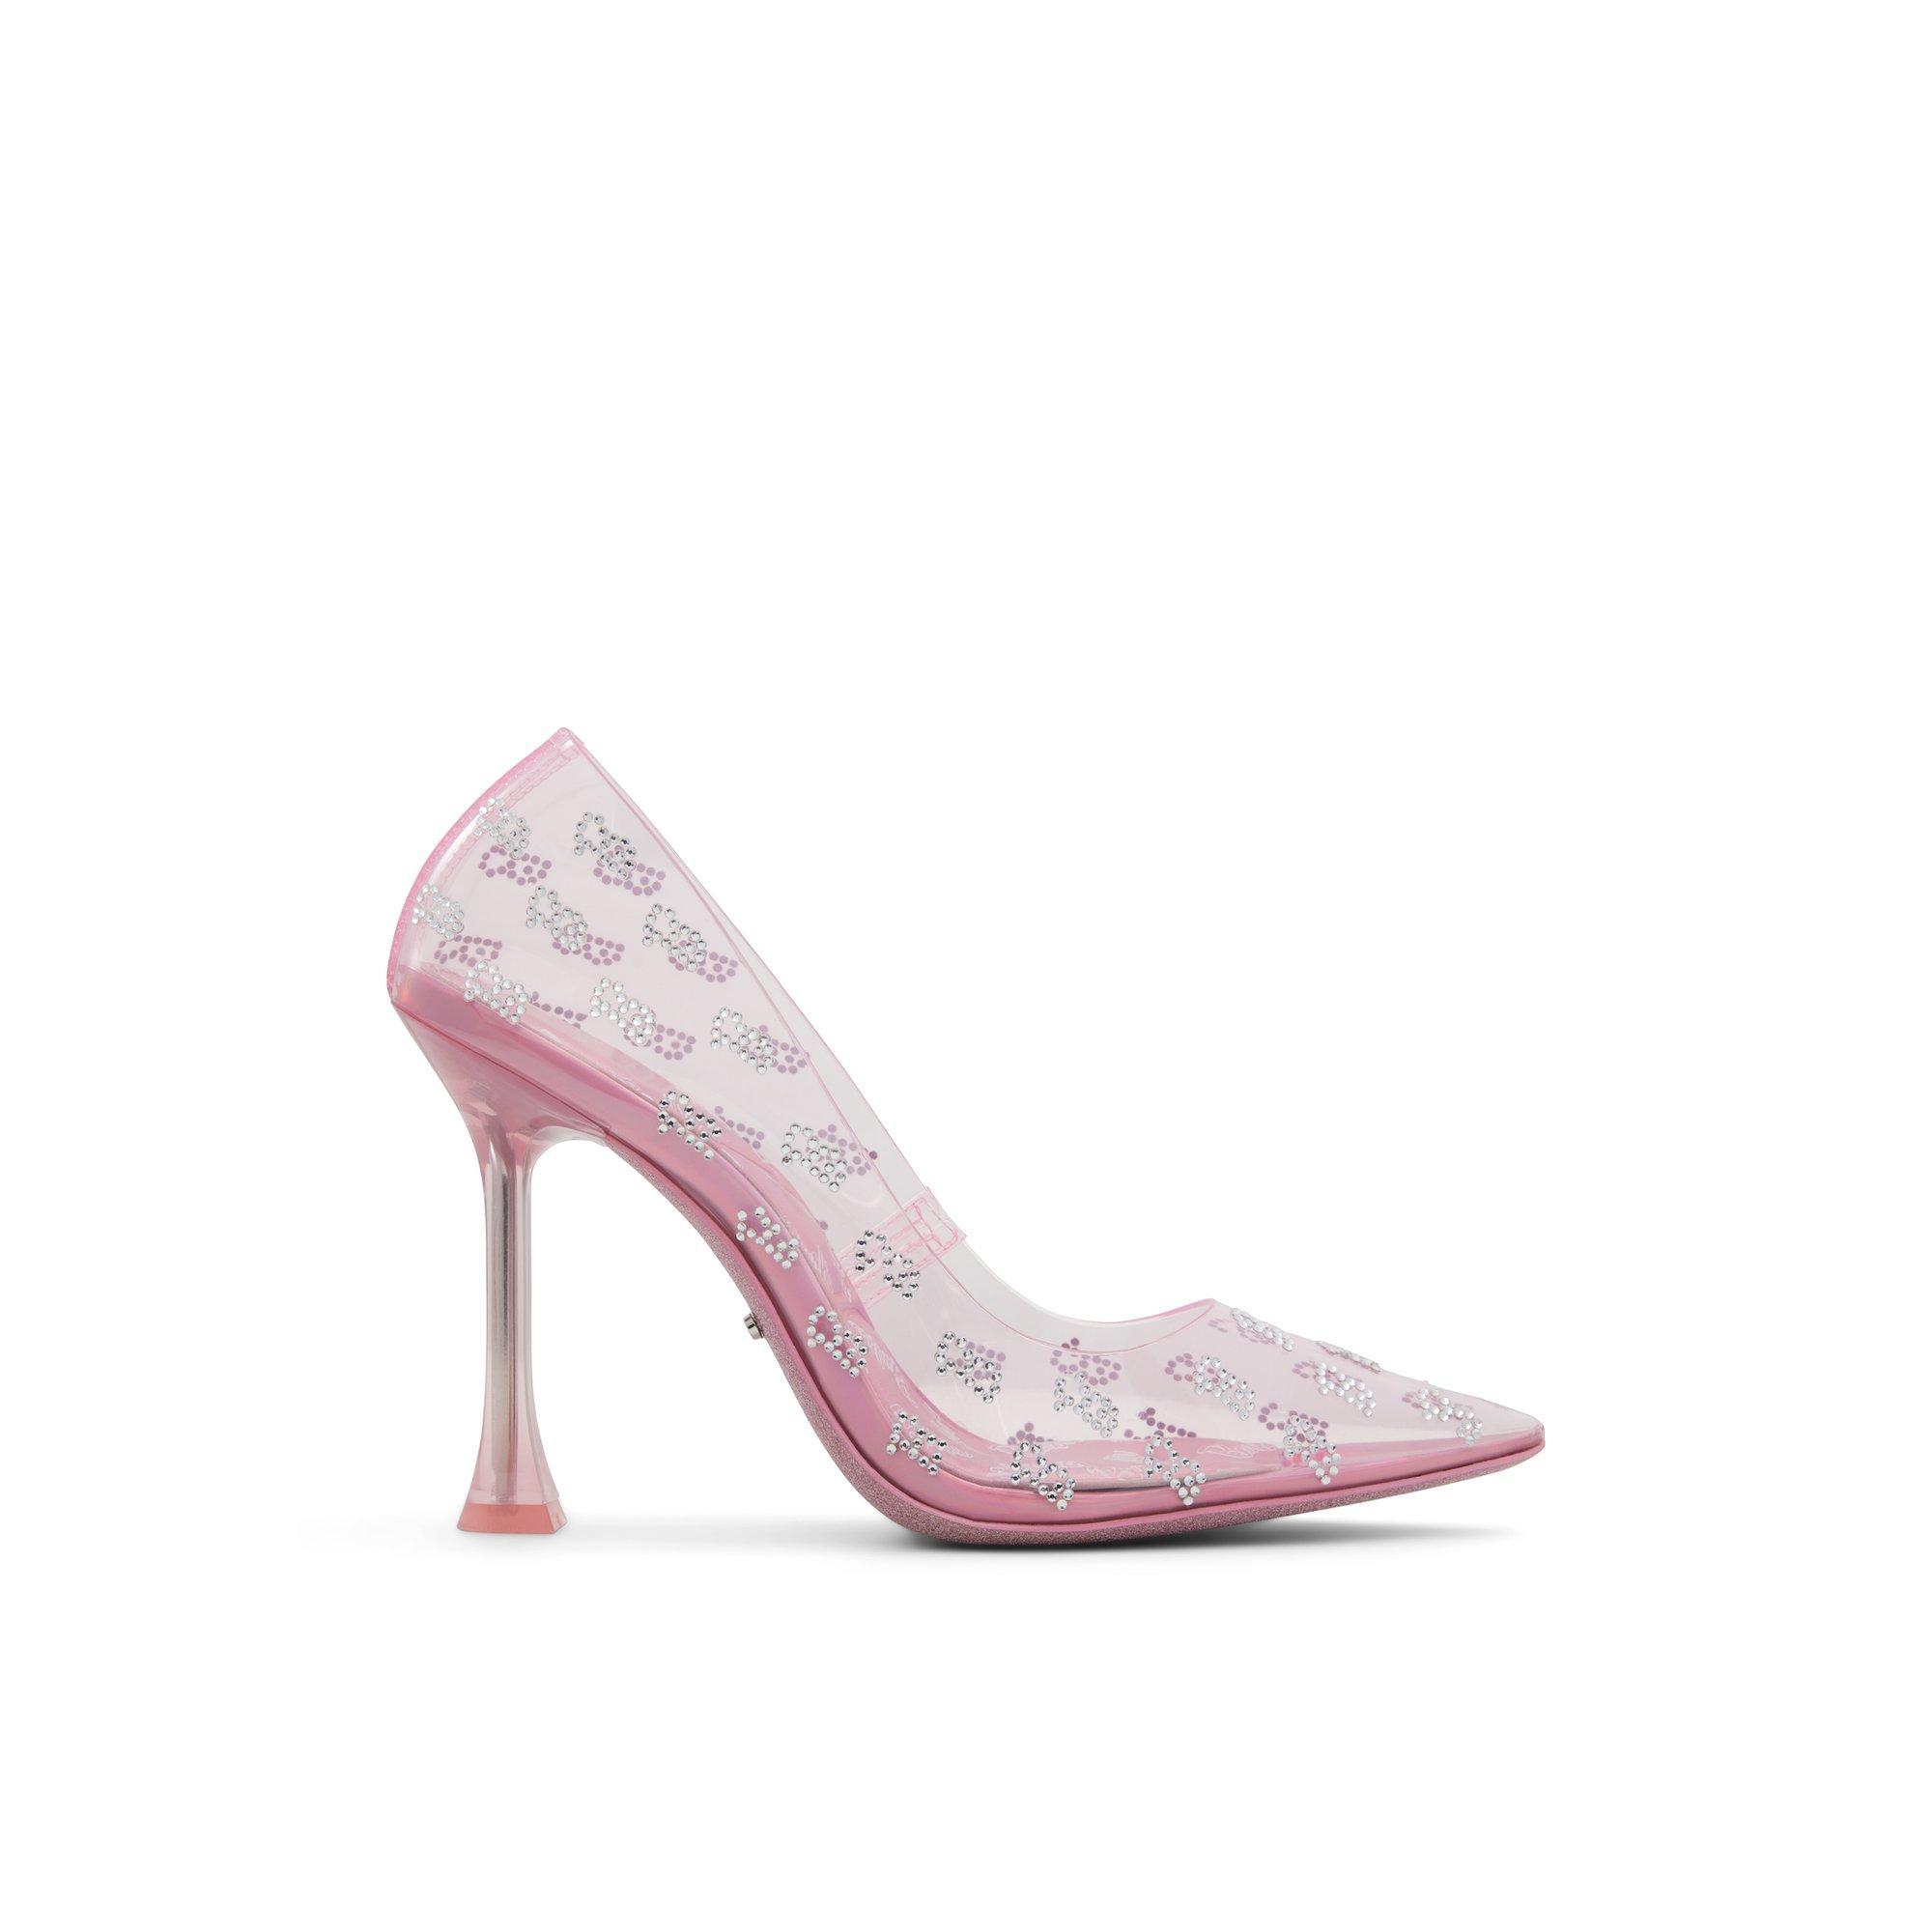 ALDO x Barbie stessy heeled shoes Product Image